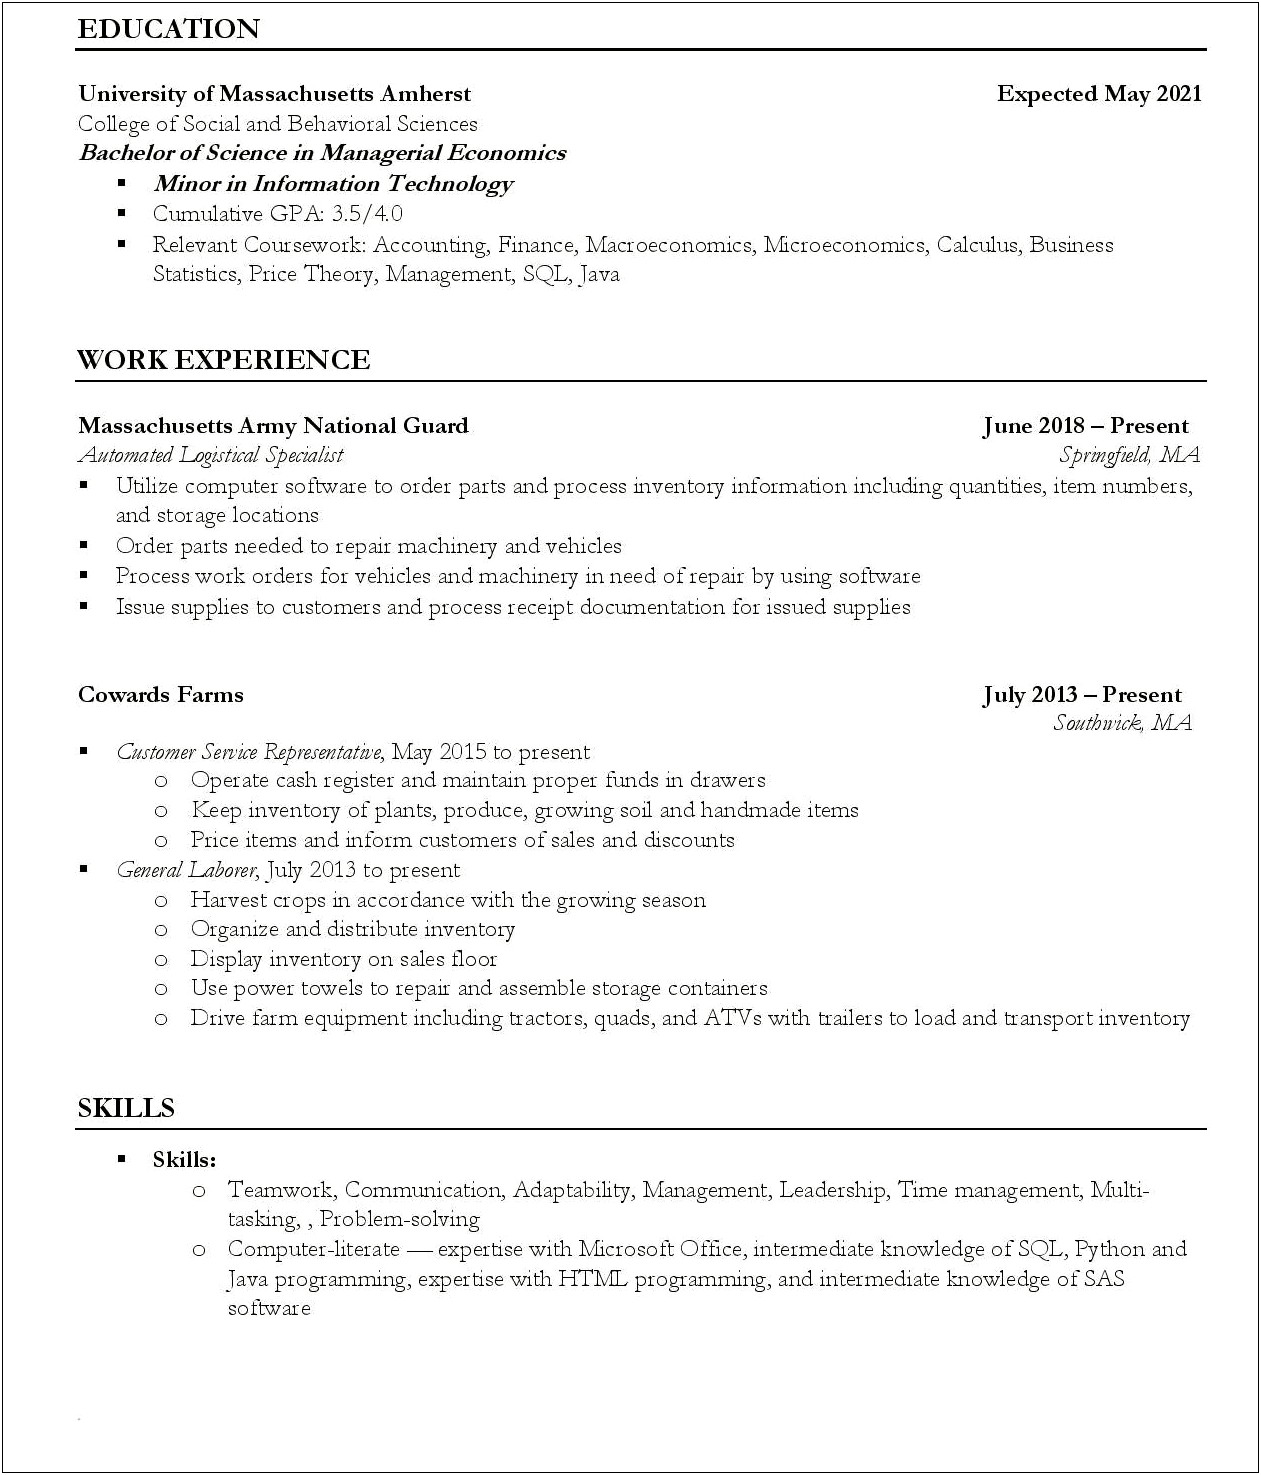 Intermediate Computer Skills On Resume